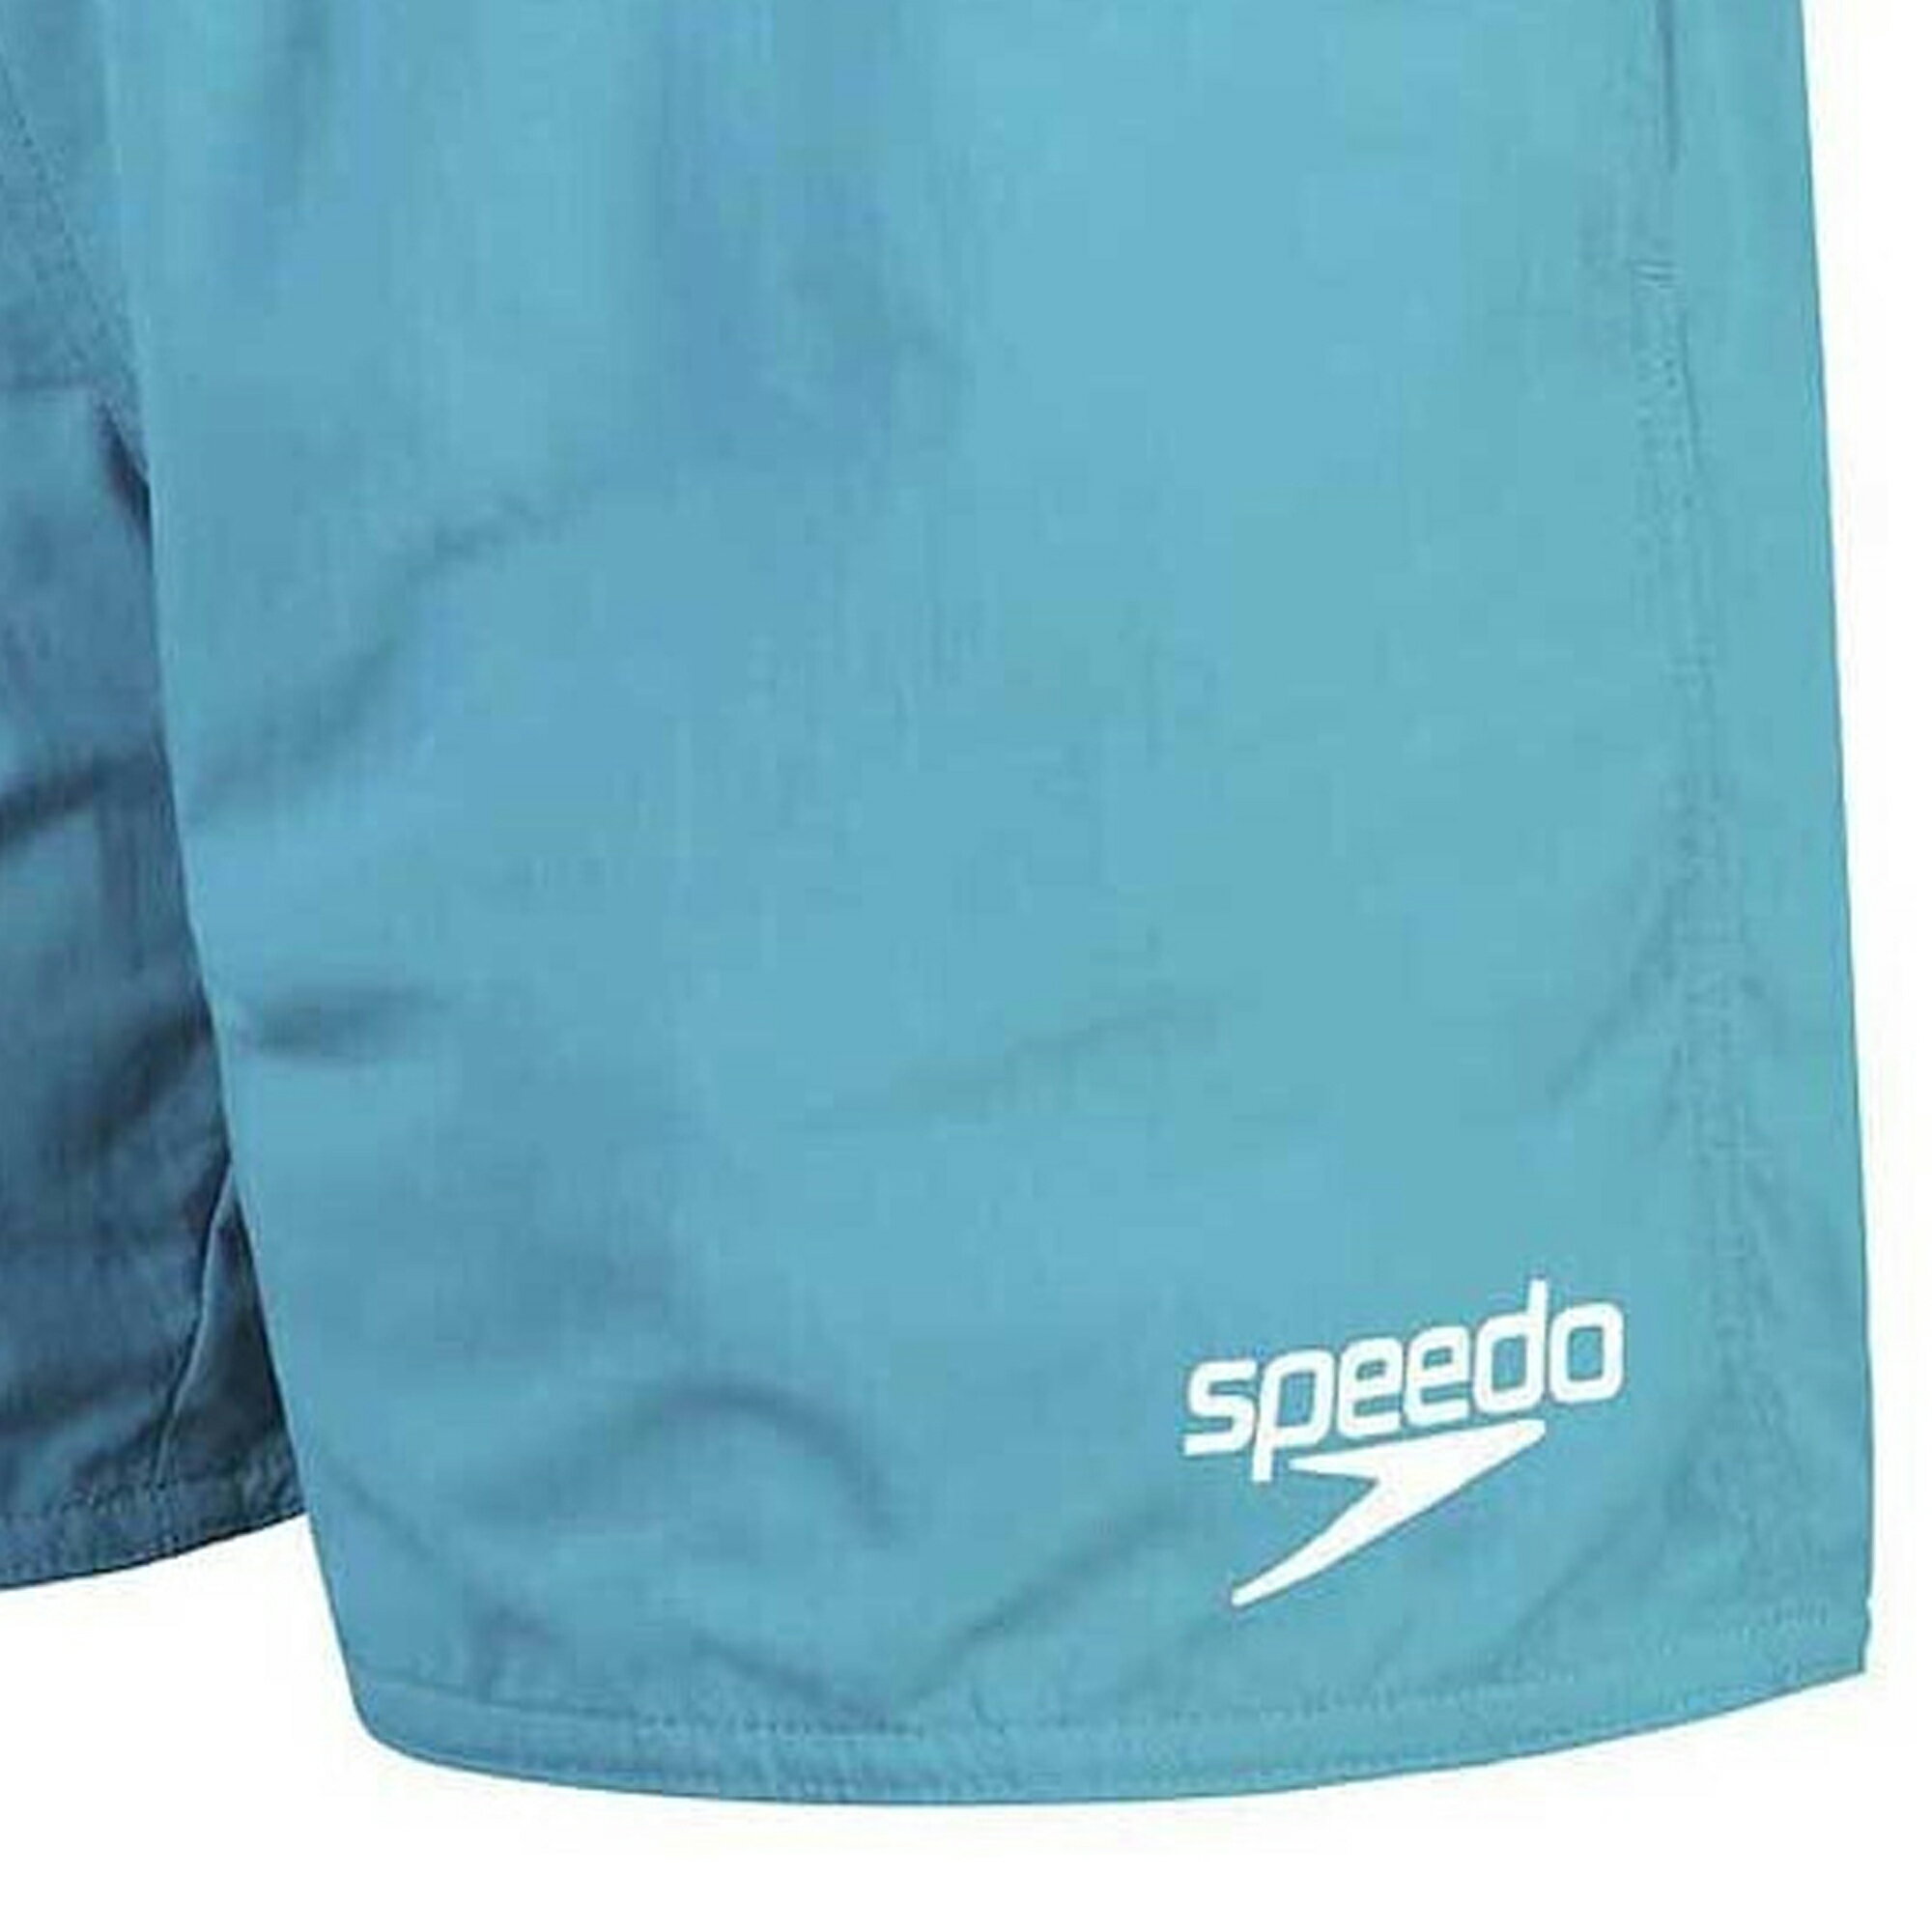 (スピード) Speedo メンズ Essentials 16 スイムパンツ 水着 【海外通販】